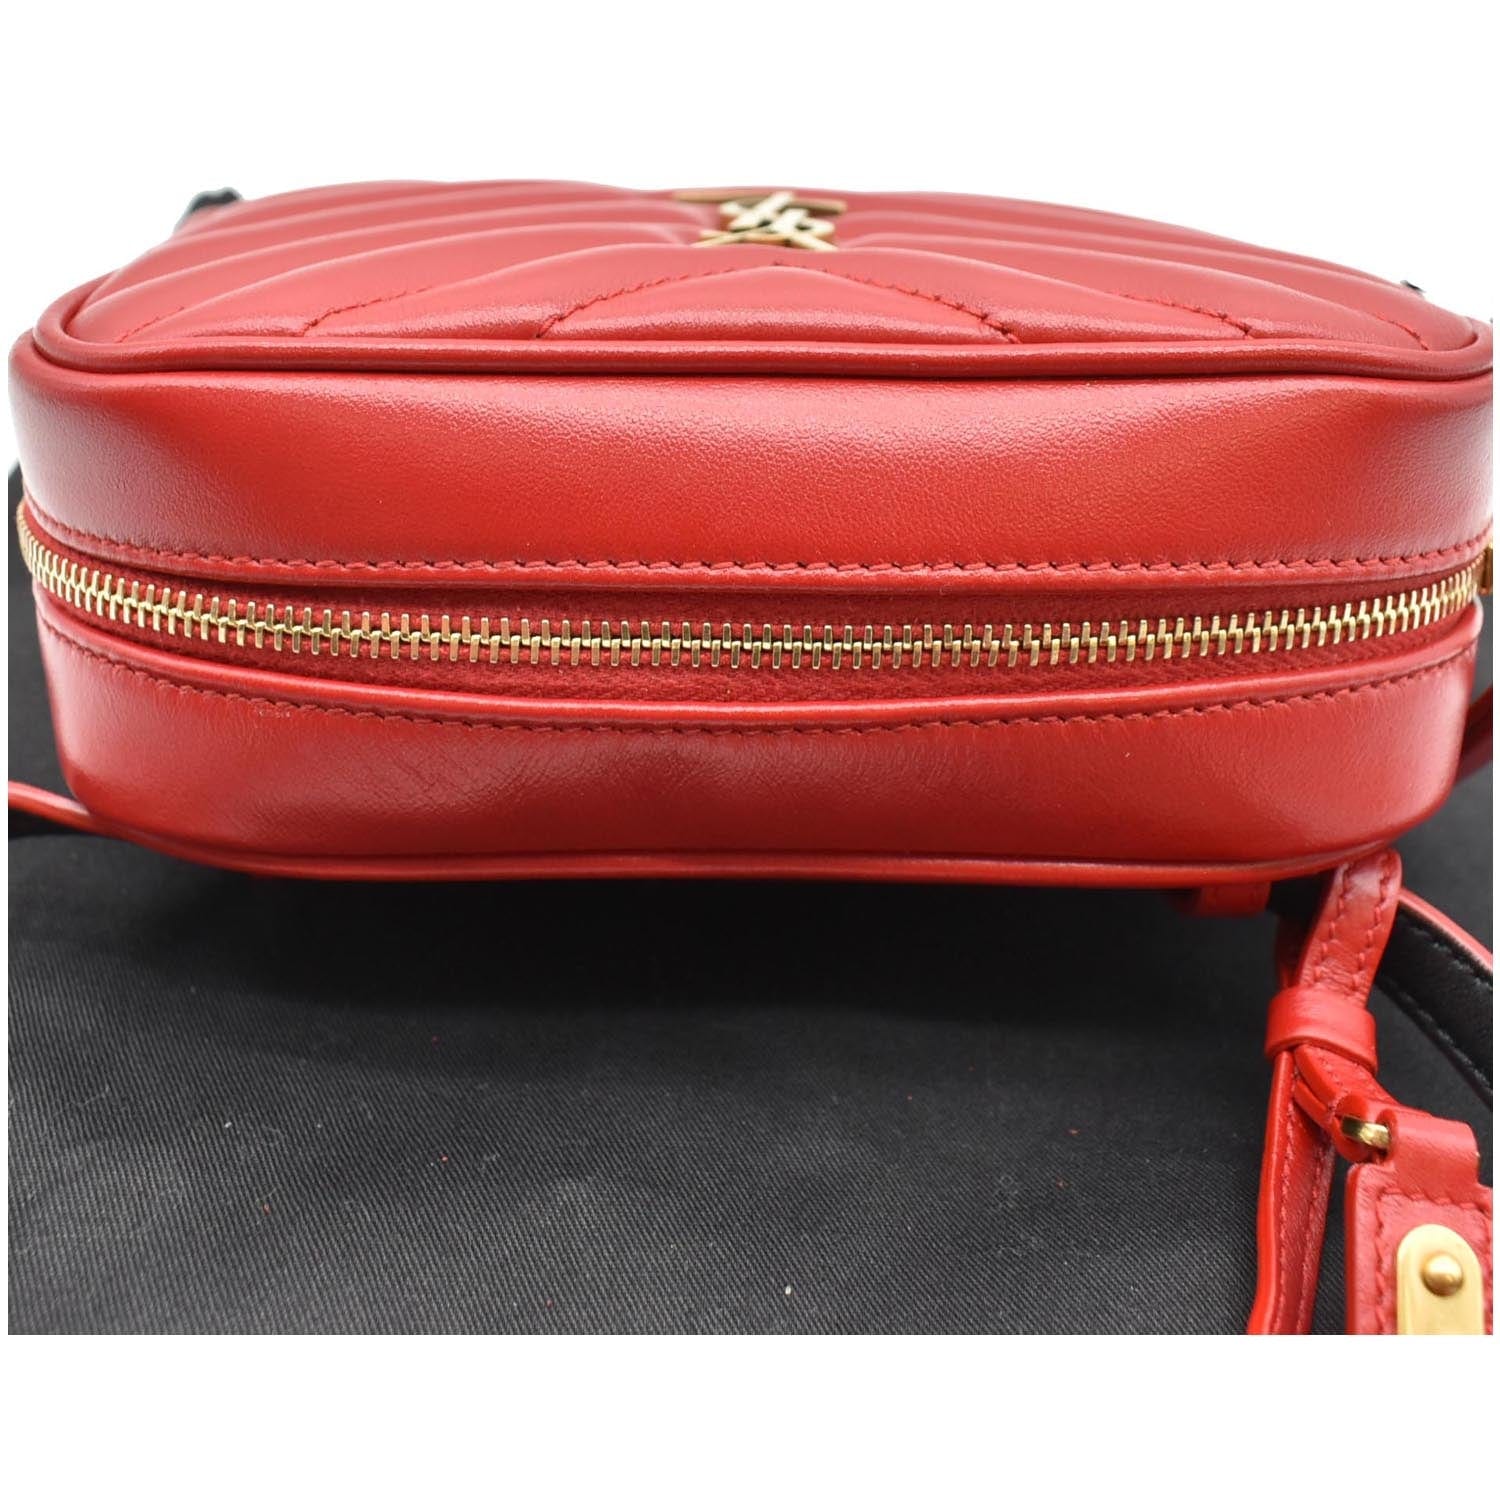 Buy Saint Laurent Navy Lou Belt Bag - 6805 Red At 22% Off